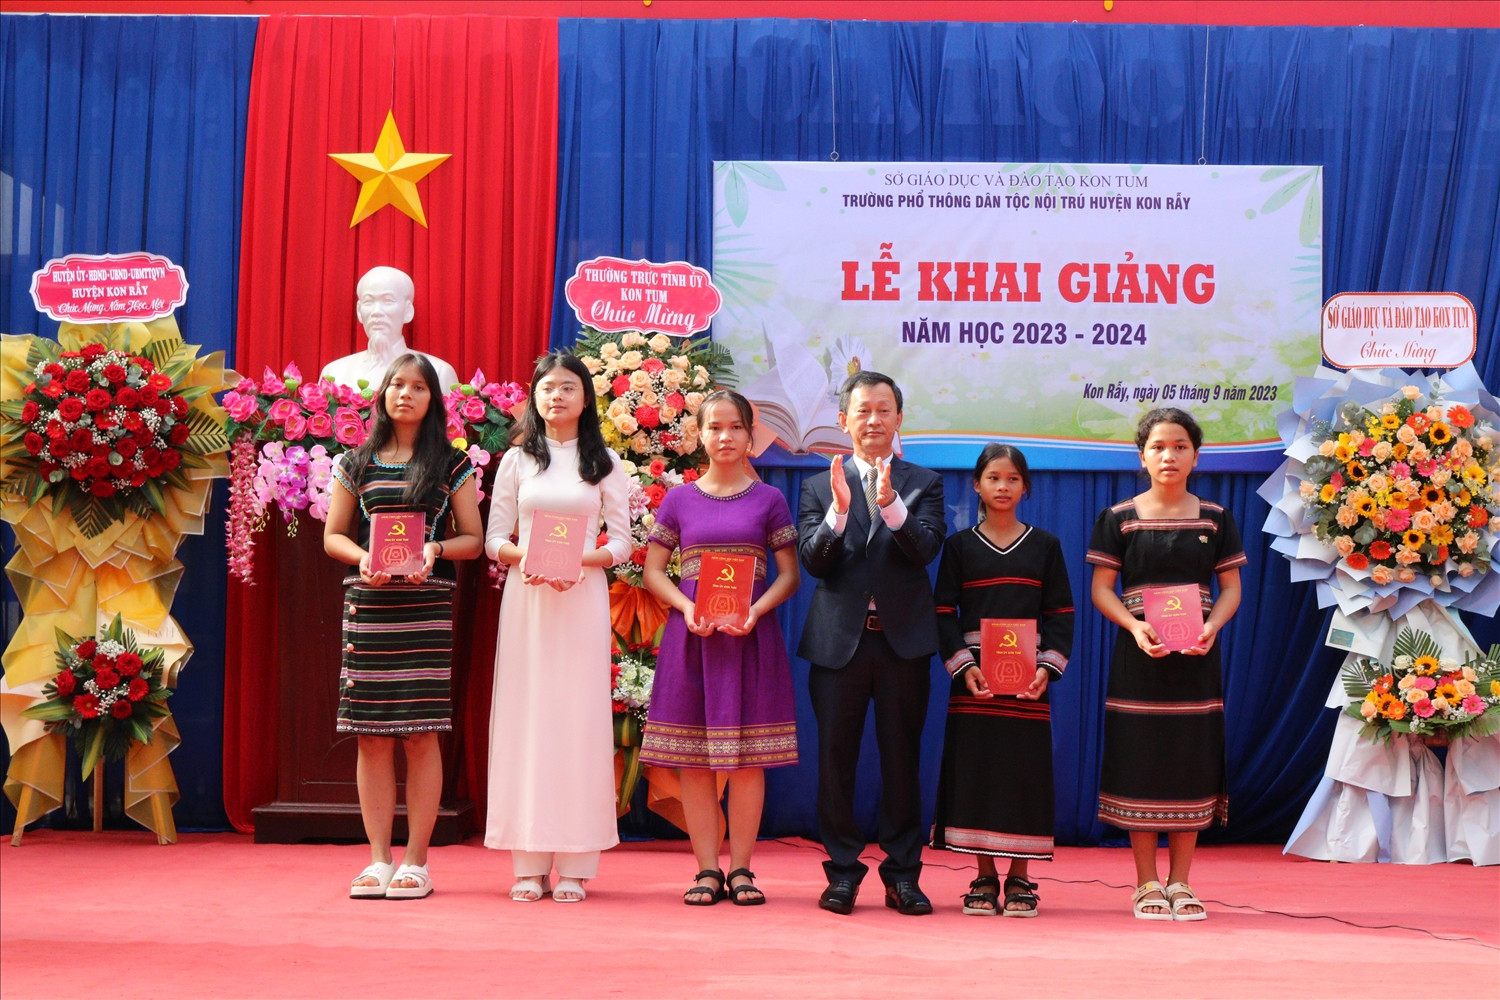 Ủy viên Ban Chấp hành Trung ương Đảng, Bí thư Tỉnh ủy Kon Tum Dương Văn Trang trao tặng học bồng cho 05 em học sinh Trường PTDTNT huyện Kon Rẫy